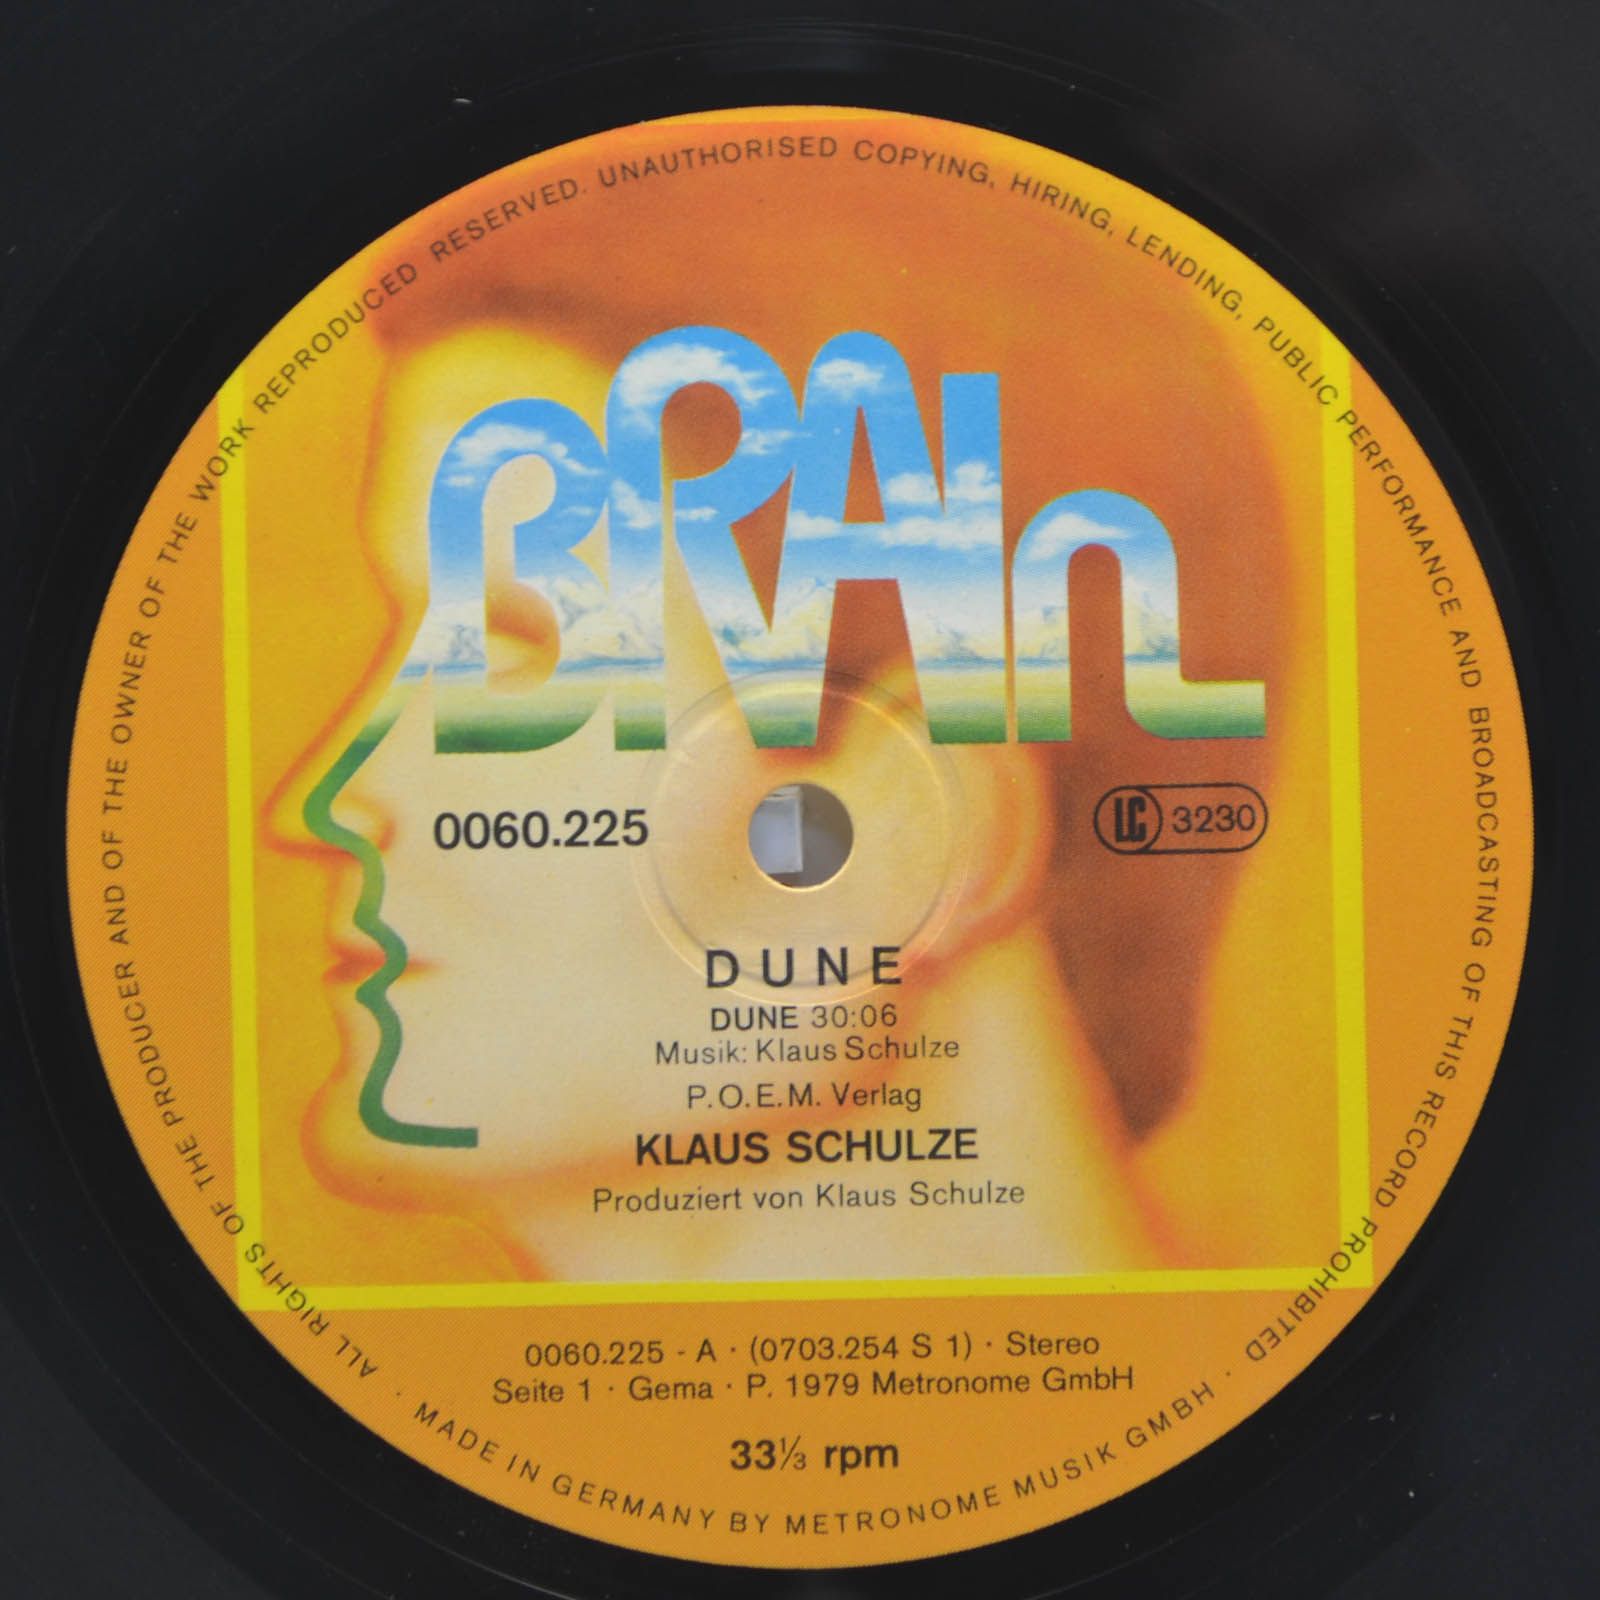 Klaus Schulze — Dune, 1979